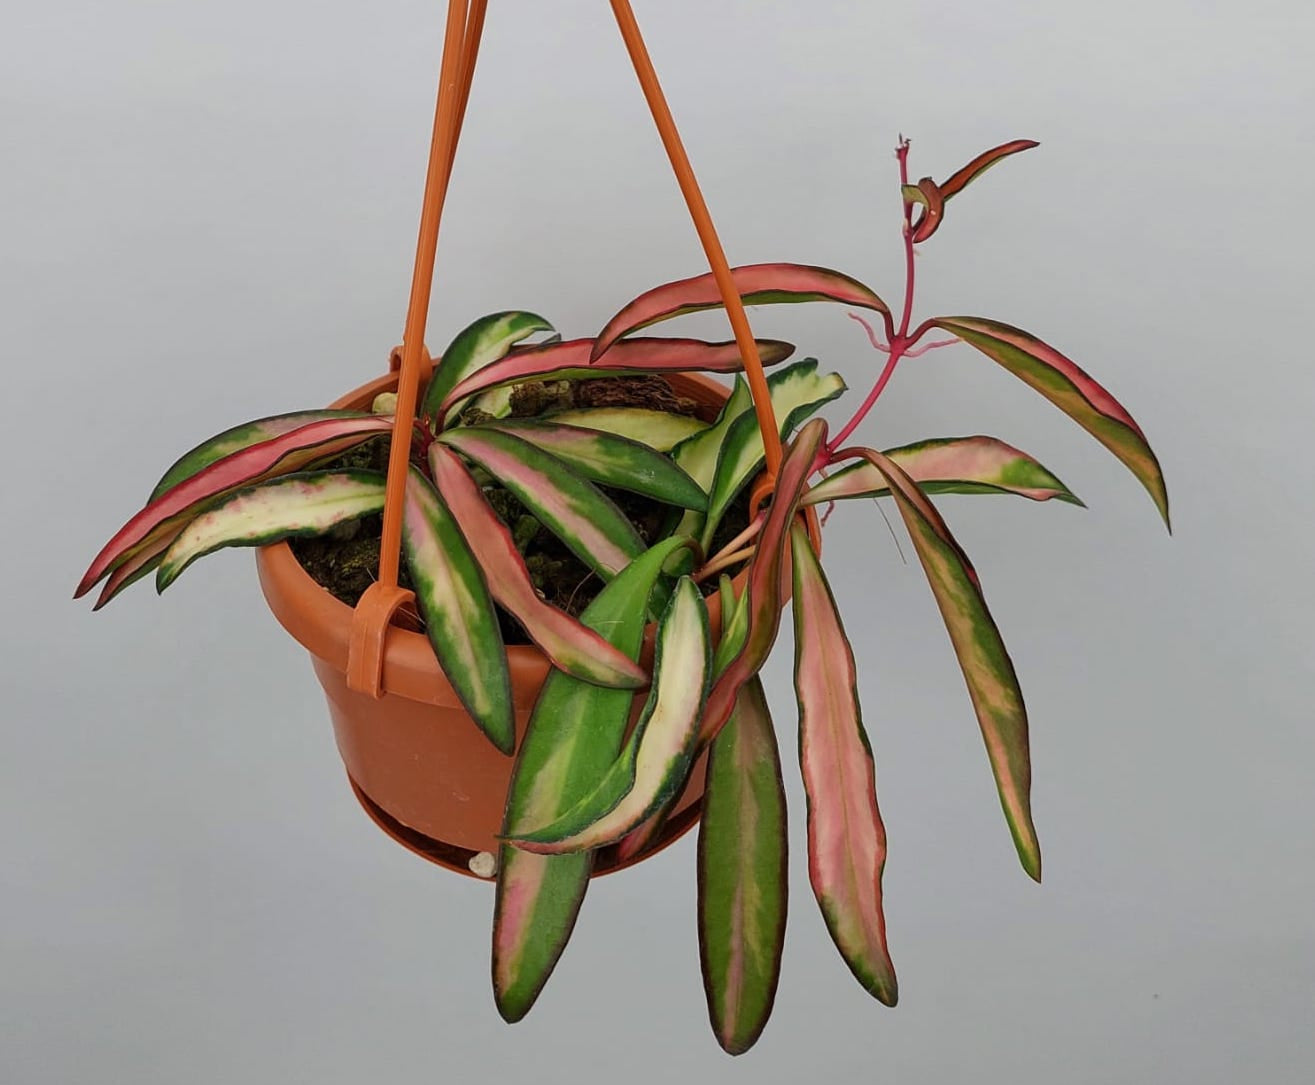 Hoya wayetii (kentiana) variegata "Big Plant"